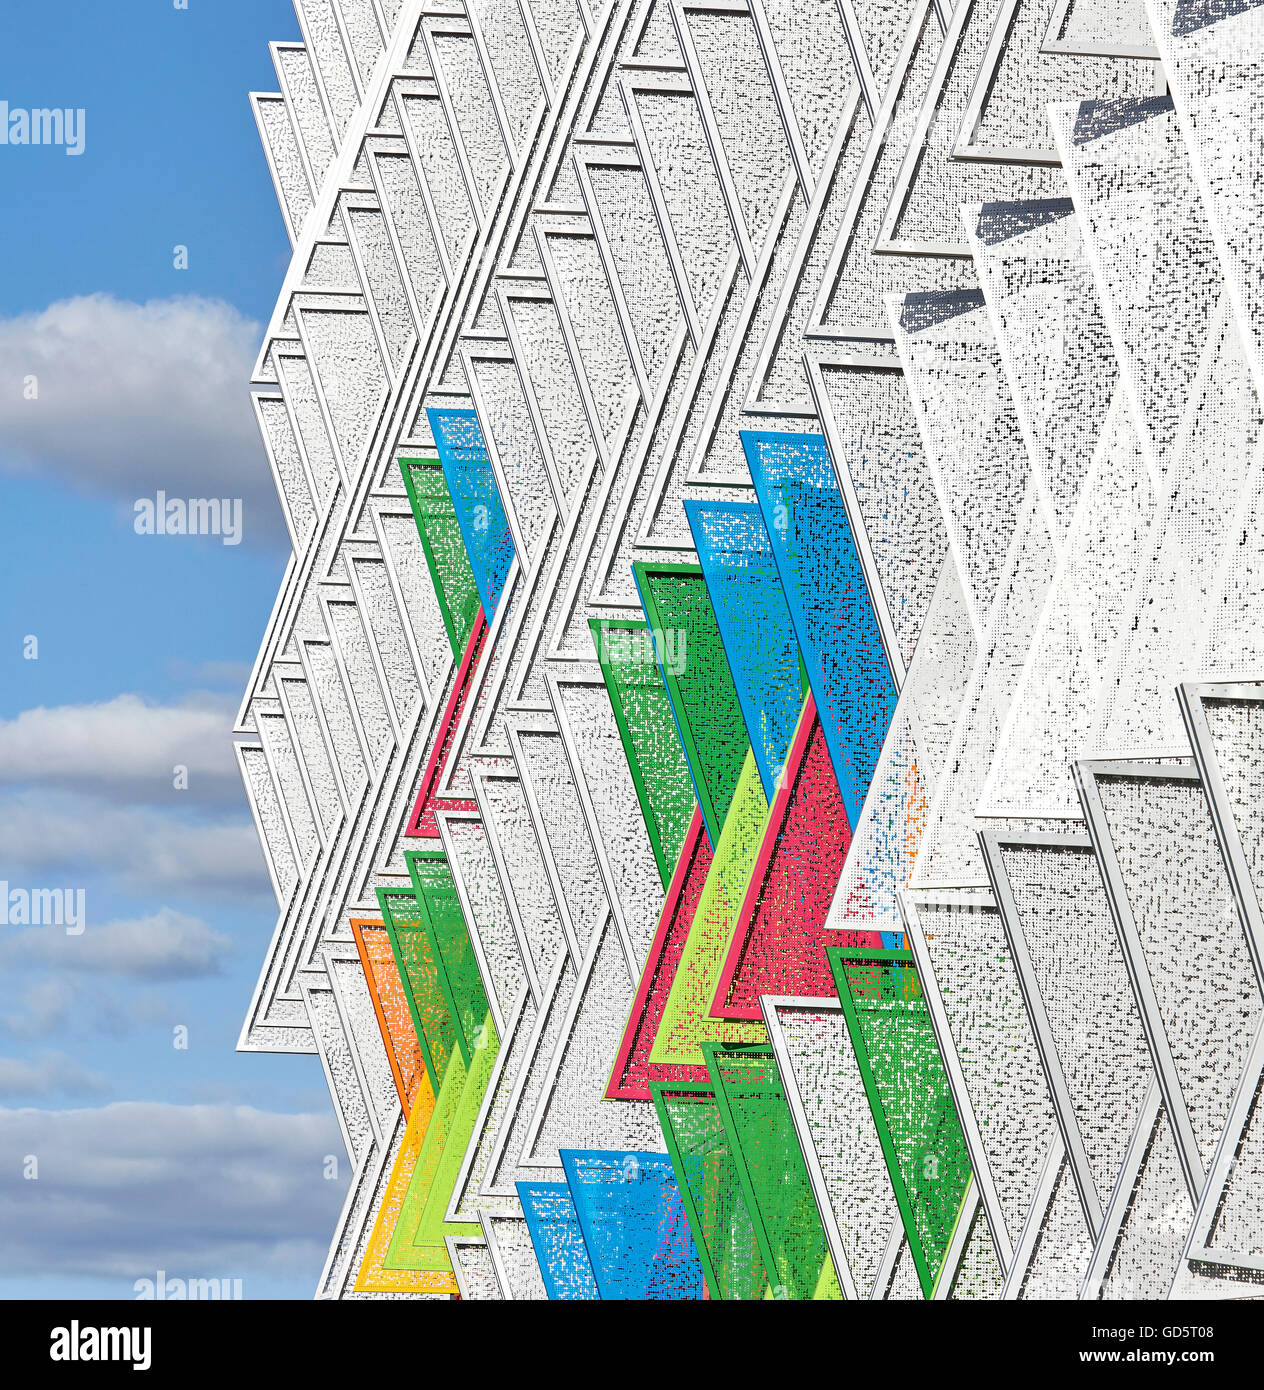 Dreieckige perforierten Stahl Fensterläden Außenfassade. SDU Campus Kolding, Kolding, Dänemark. Architekt: Henning Larsen Architects, 2015. Stockfoto